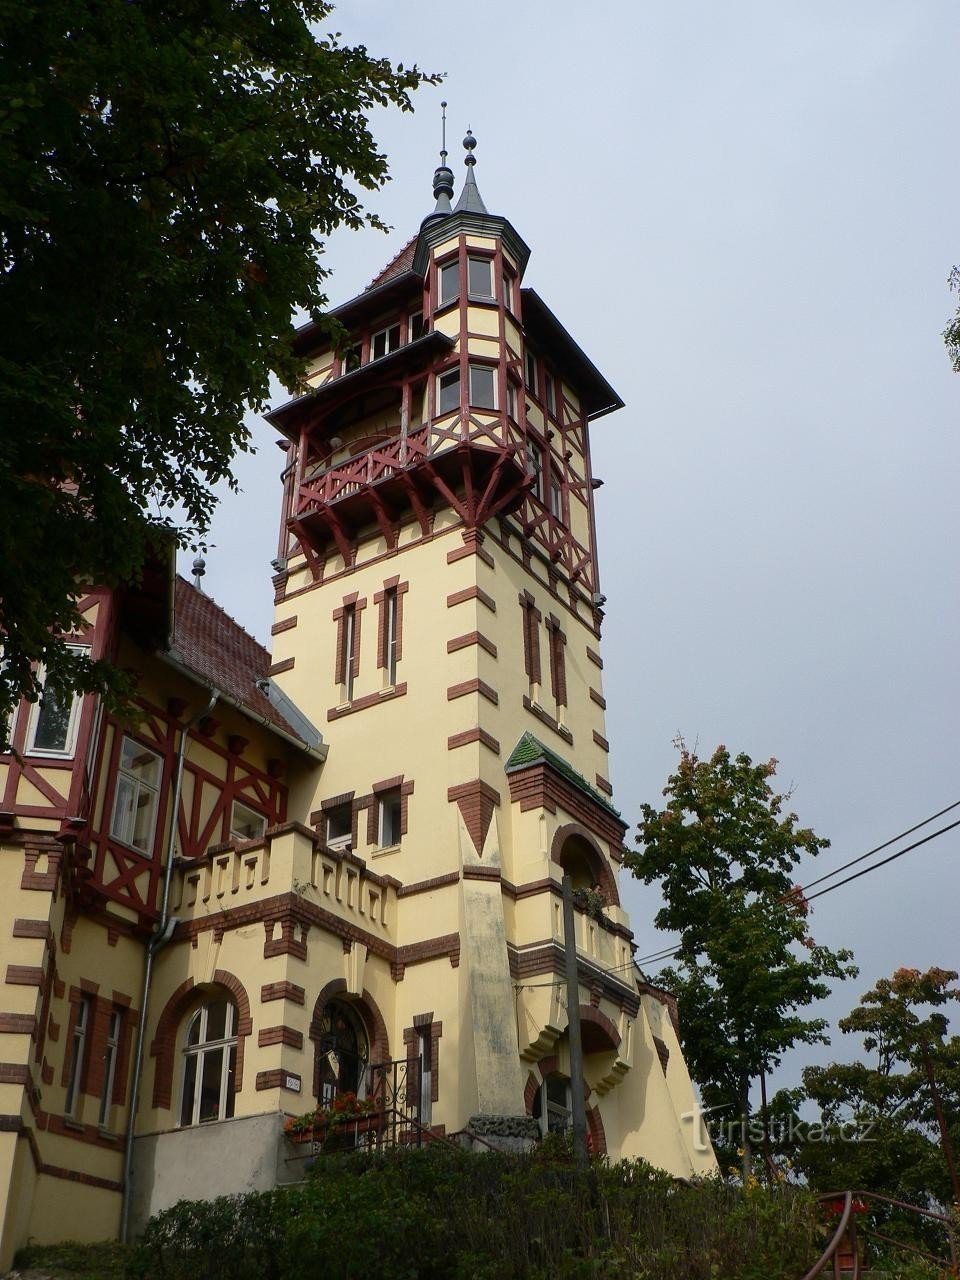 Castelo, torre de observação